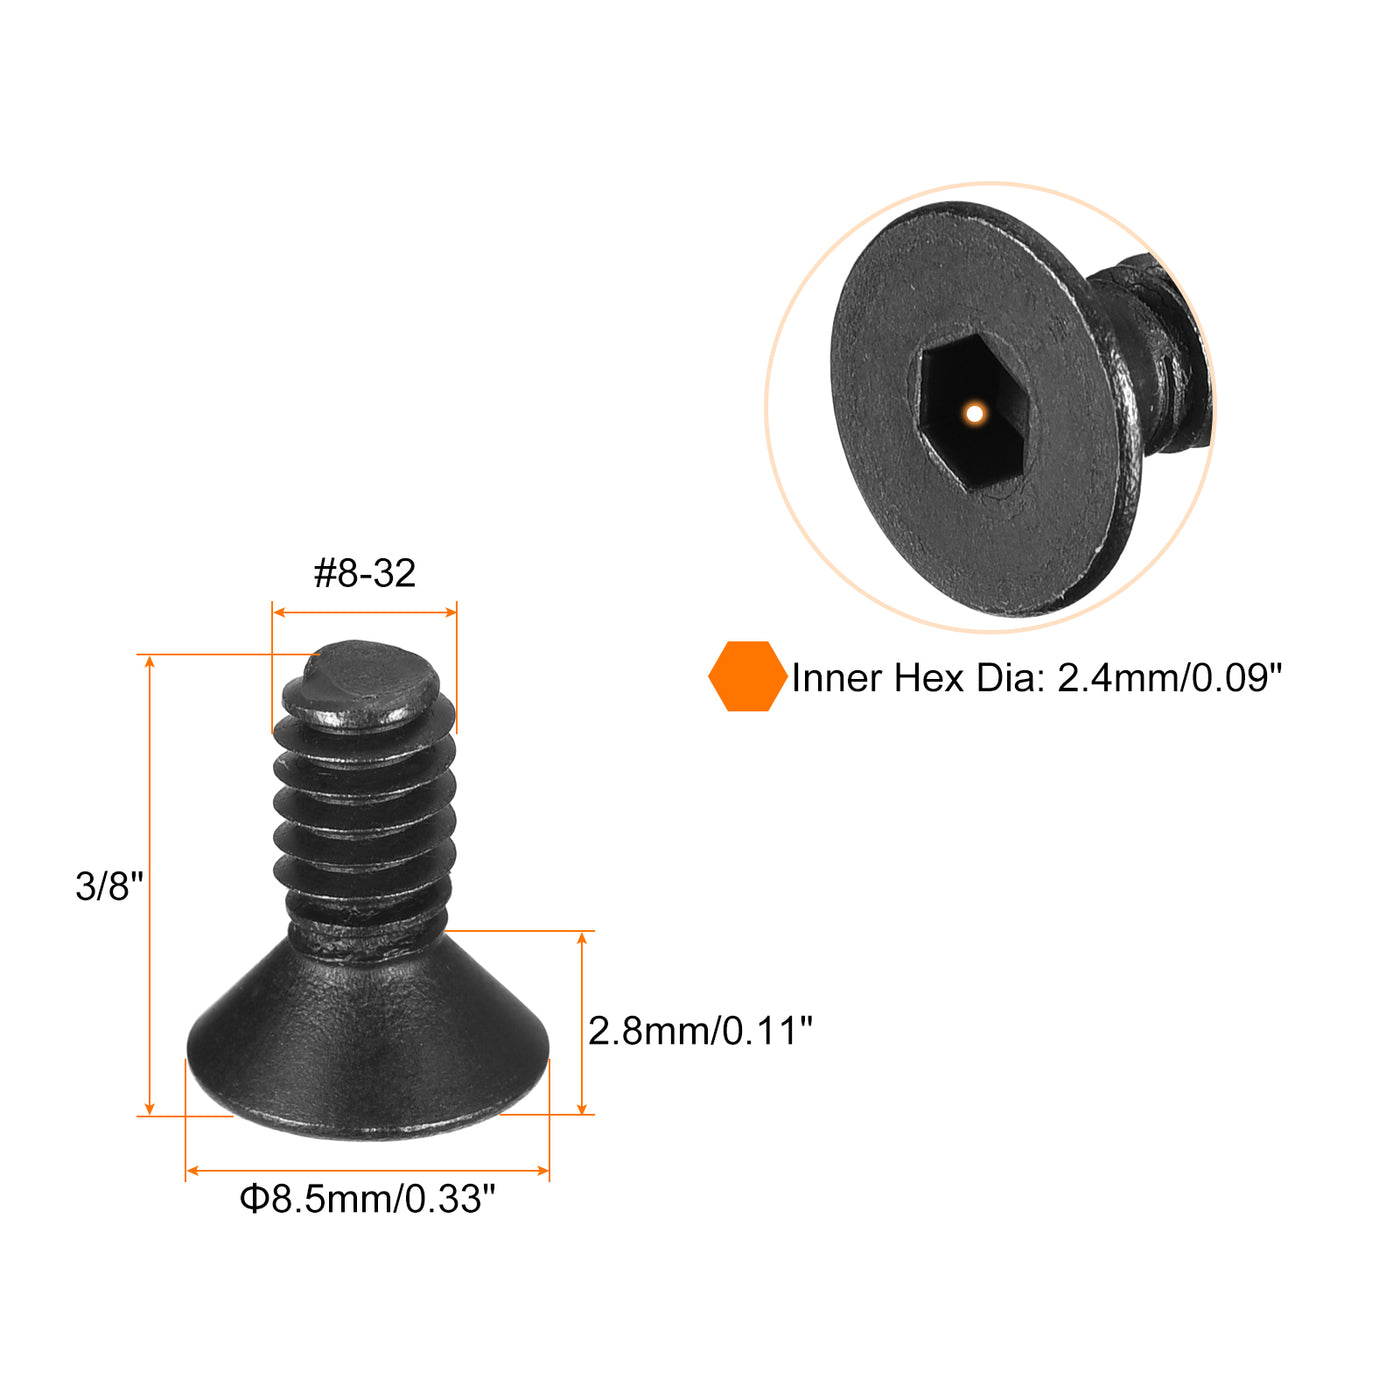 uxcell Uxcell #8-32x3/8" Flat Head Socket Cap Screws, 10.9 Grade Carbon, Black, 20pcs